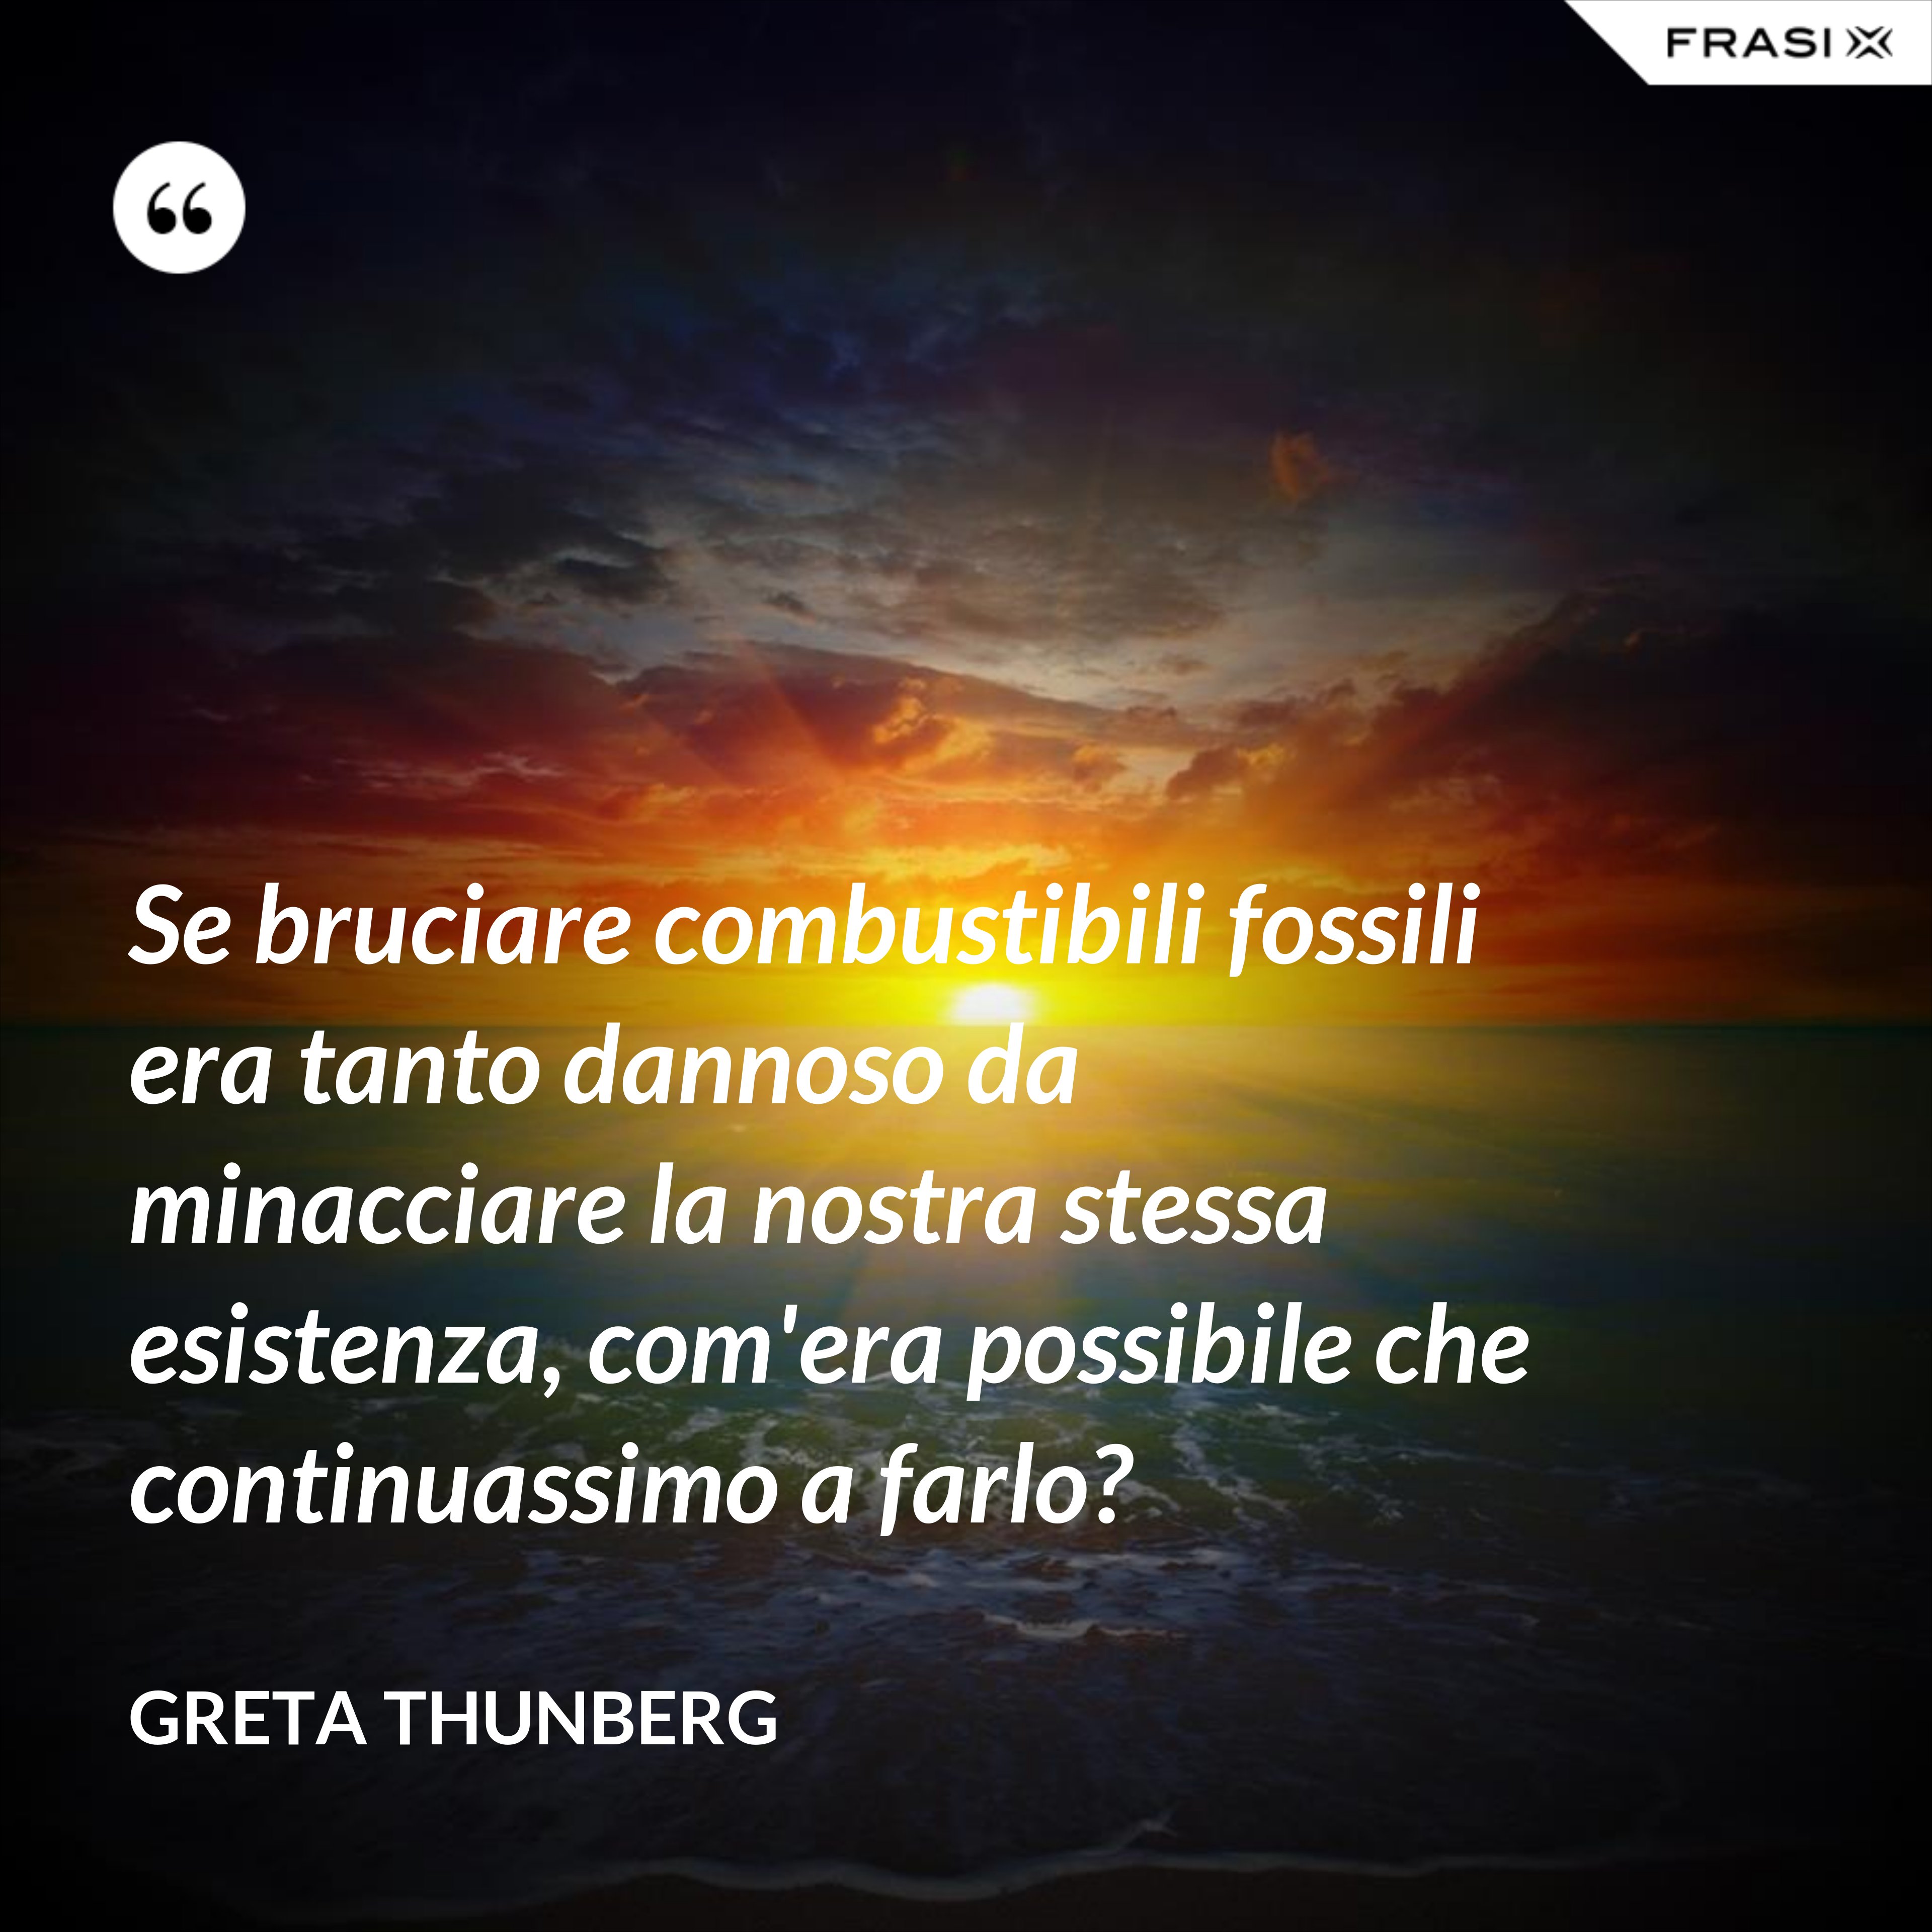 Se bruciare combustibili fossili era tanto dannoso da minacciare la nostra stessa esistenza, com'era possibile che continuassimo a farlo? - Greta Thunberg